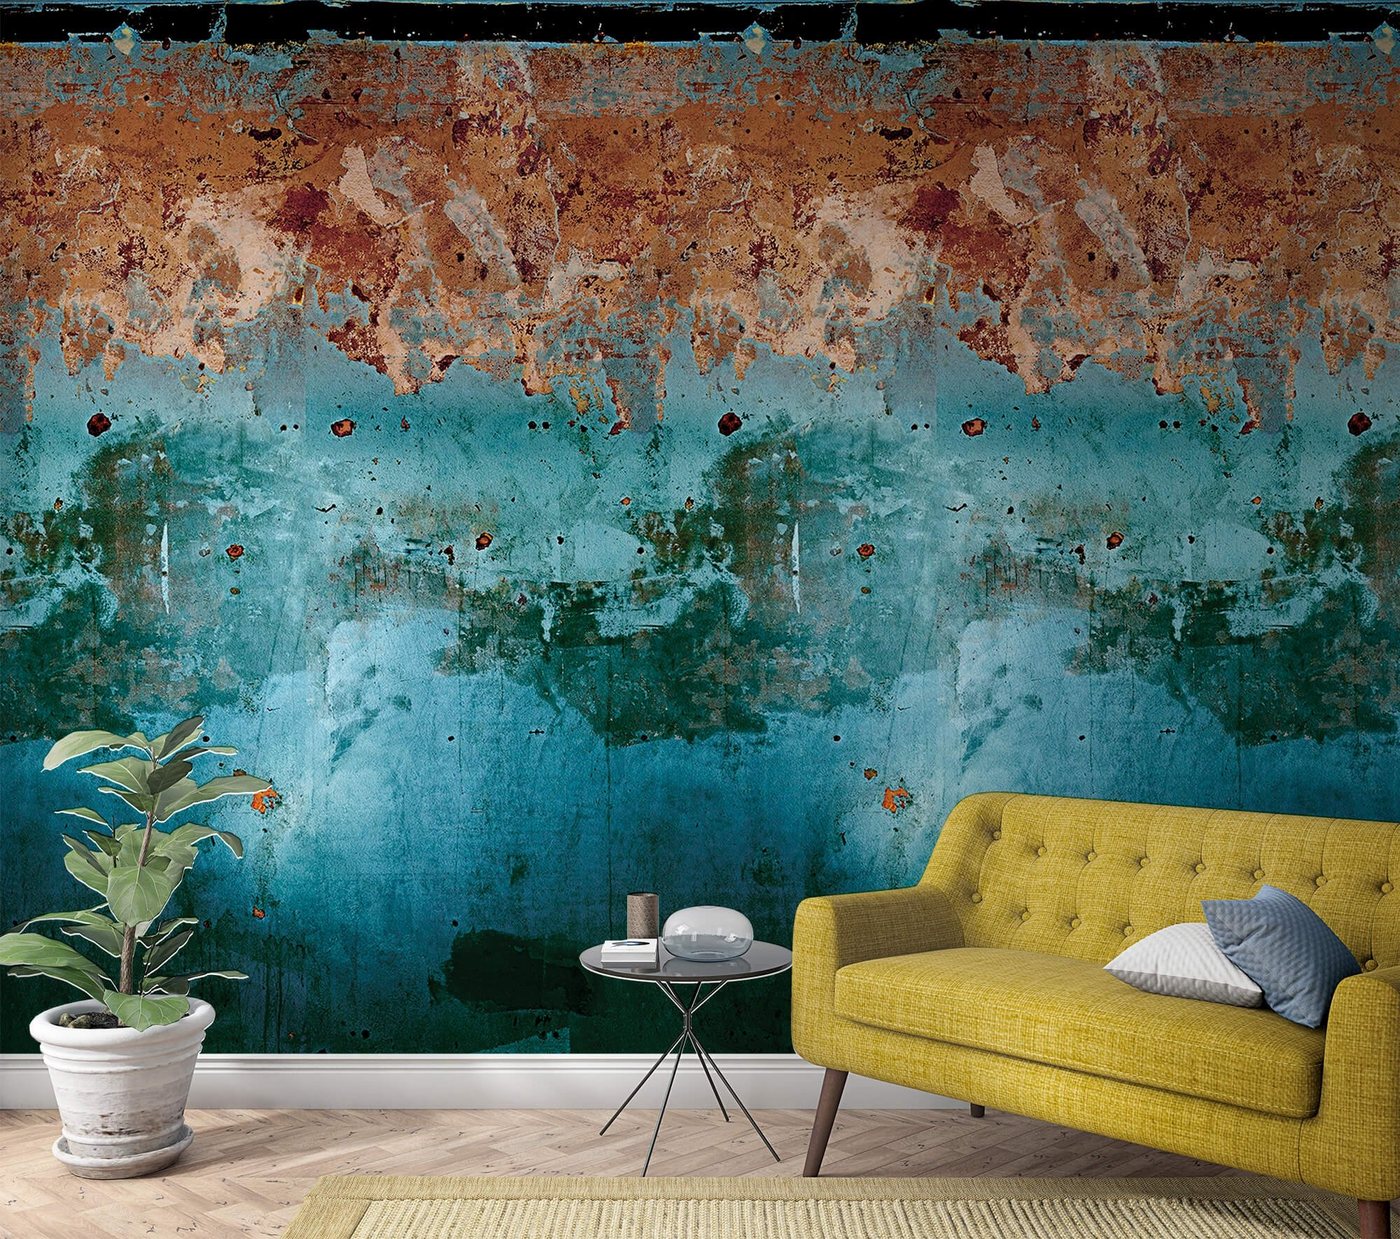 Newroom Vliestapete, [ 2,7 x 1,59m ] großzügiges Motiv - kein wiederkehrendes Muster - nahtlos große Flächen möglich - Fototapete Wandbild Beton Rost Zement Made in Germany von Newroom